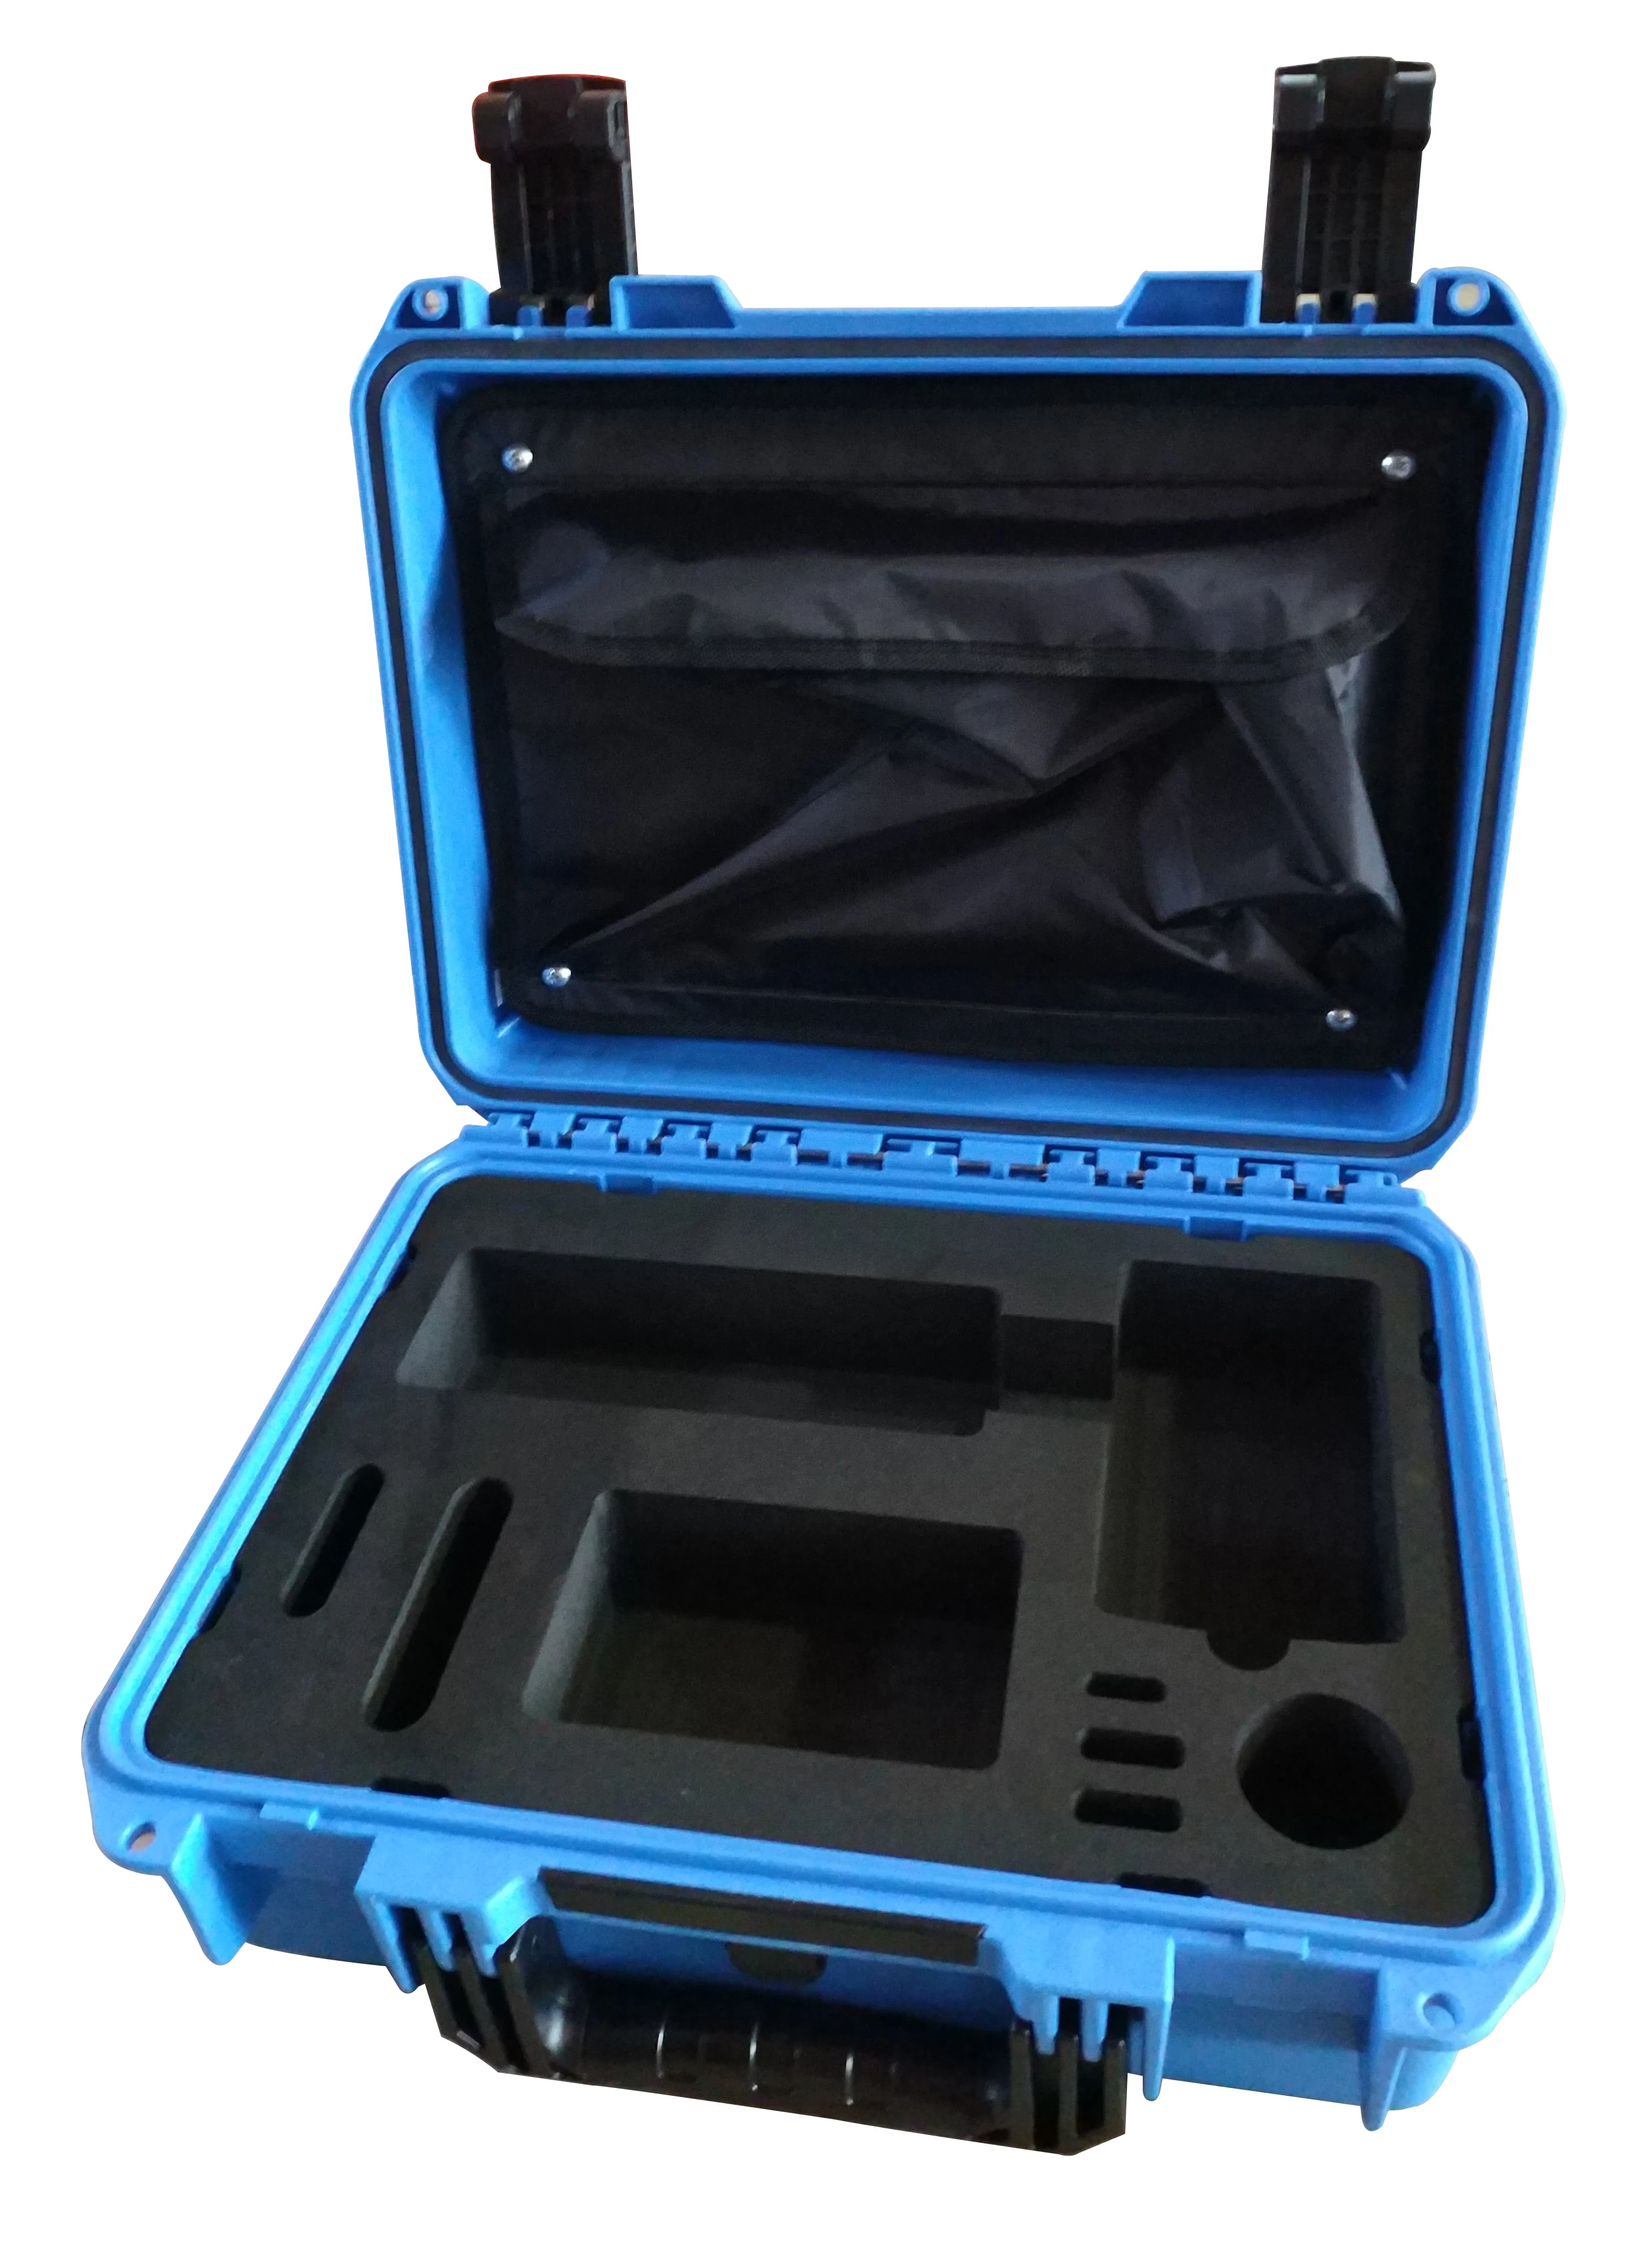 Tricases fabrika yeni gelmesi mavi renk IP67 su geçirmez darbeye dayanıklı sert PP plastik taşıma alet çantası enstrüman için M2200 . ' - ' . 3